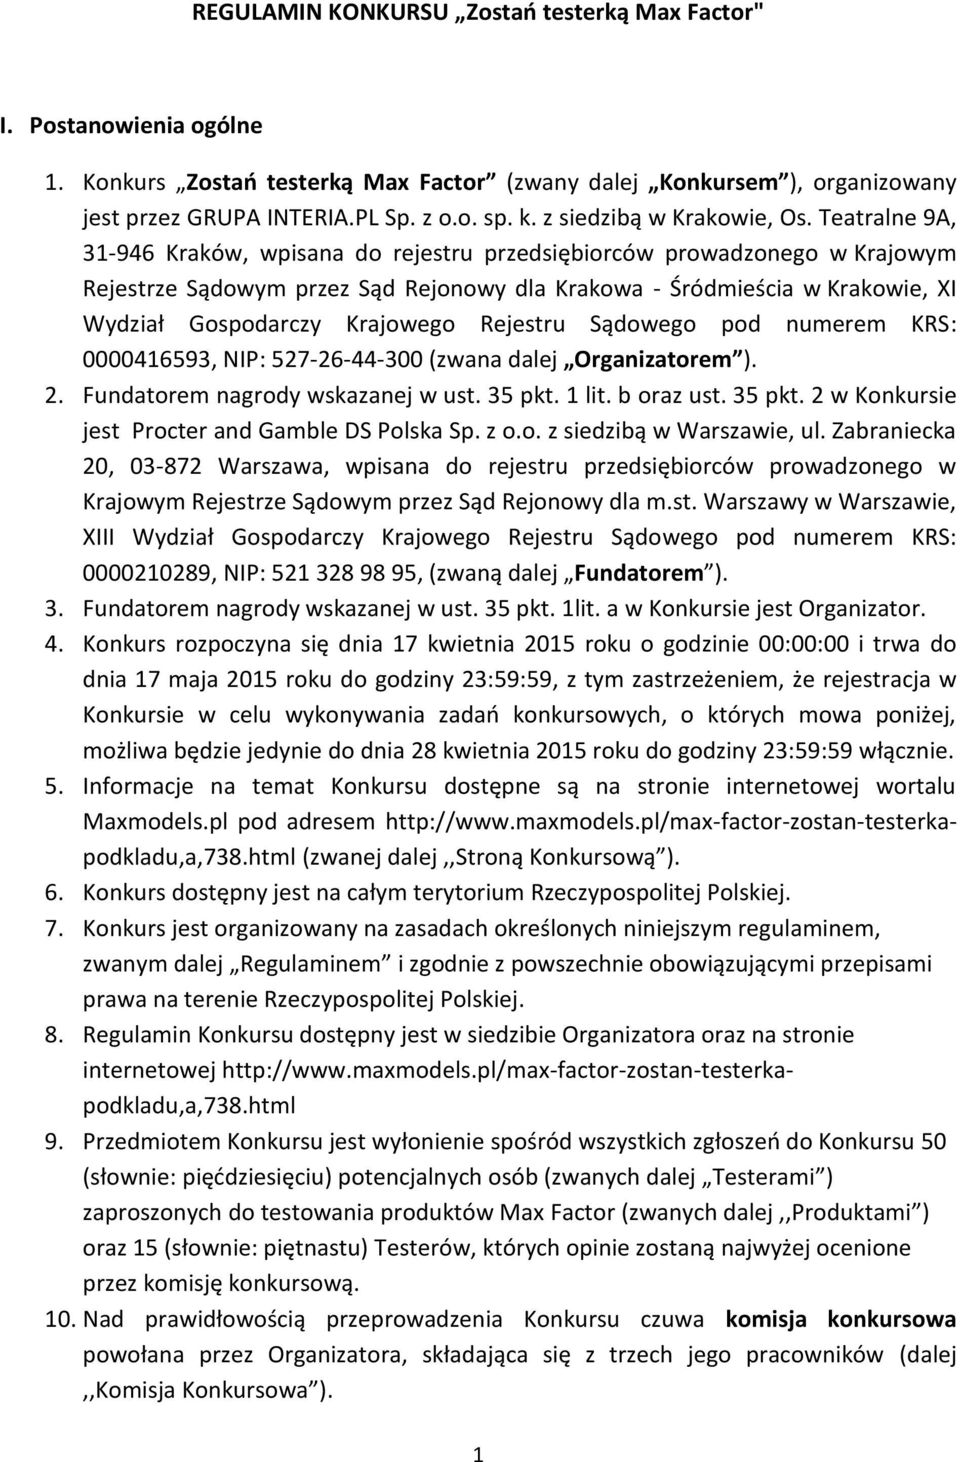 Teatralne 9A, 31-946 Kraków, wpisana do rejestru przedsiębiorców prowadzonego w Krajowym Rejestrze Sądowym przez Sąd Rejonowy dla Krakowa - Śródmieścia w Krakowie, XI Wydział Gospodarczy Krajowego